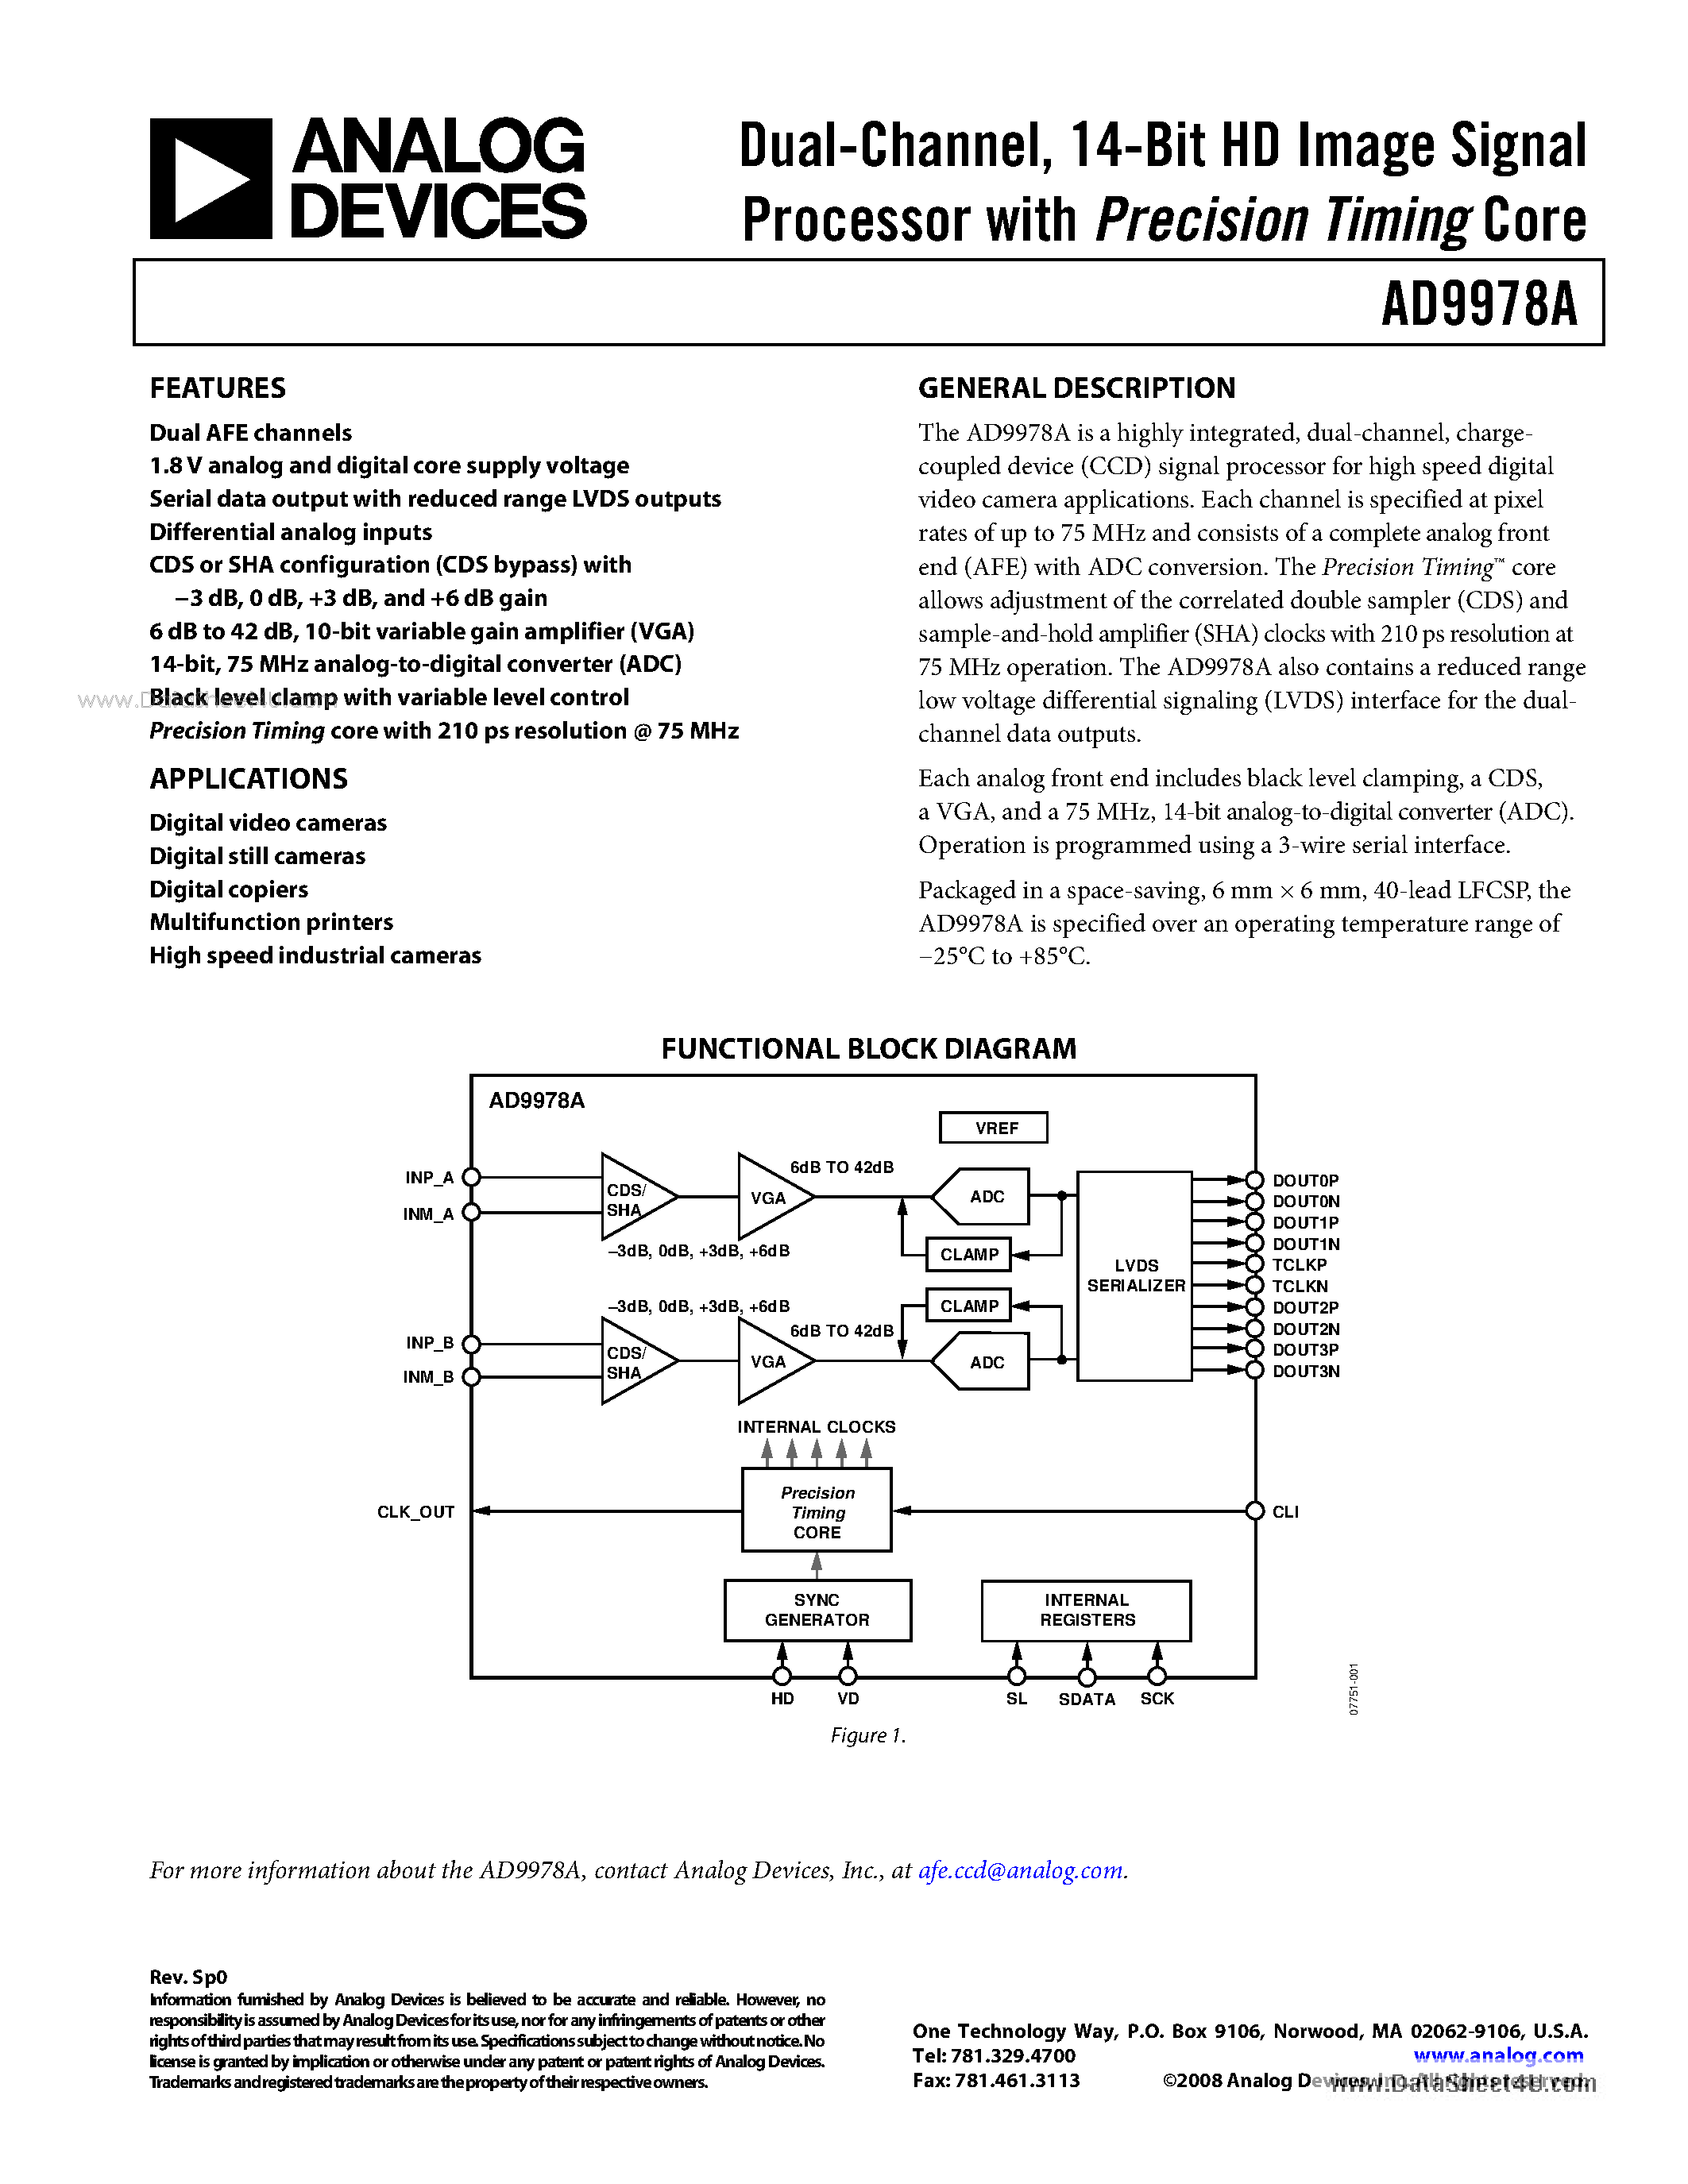 Даташит AD9978A - 14-Bit HD Image Signal Processor страница 1